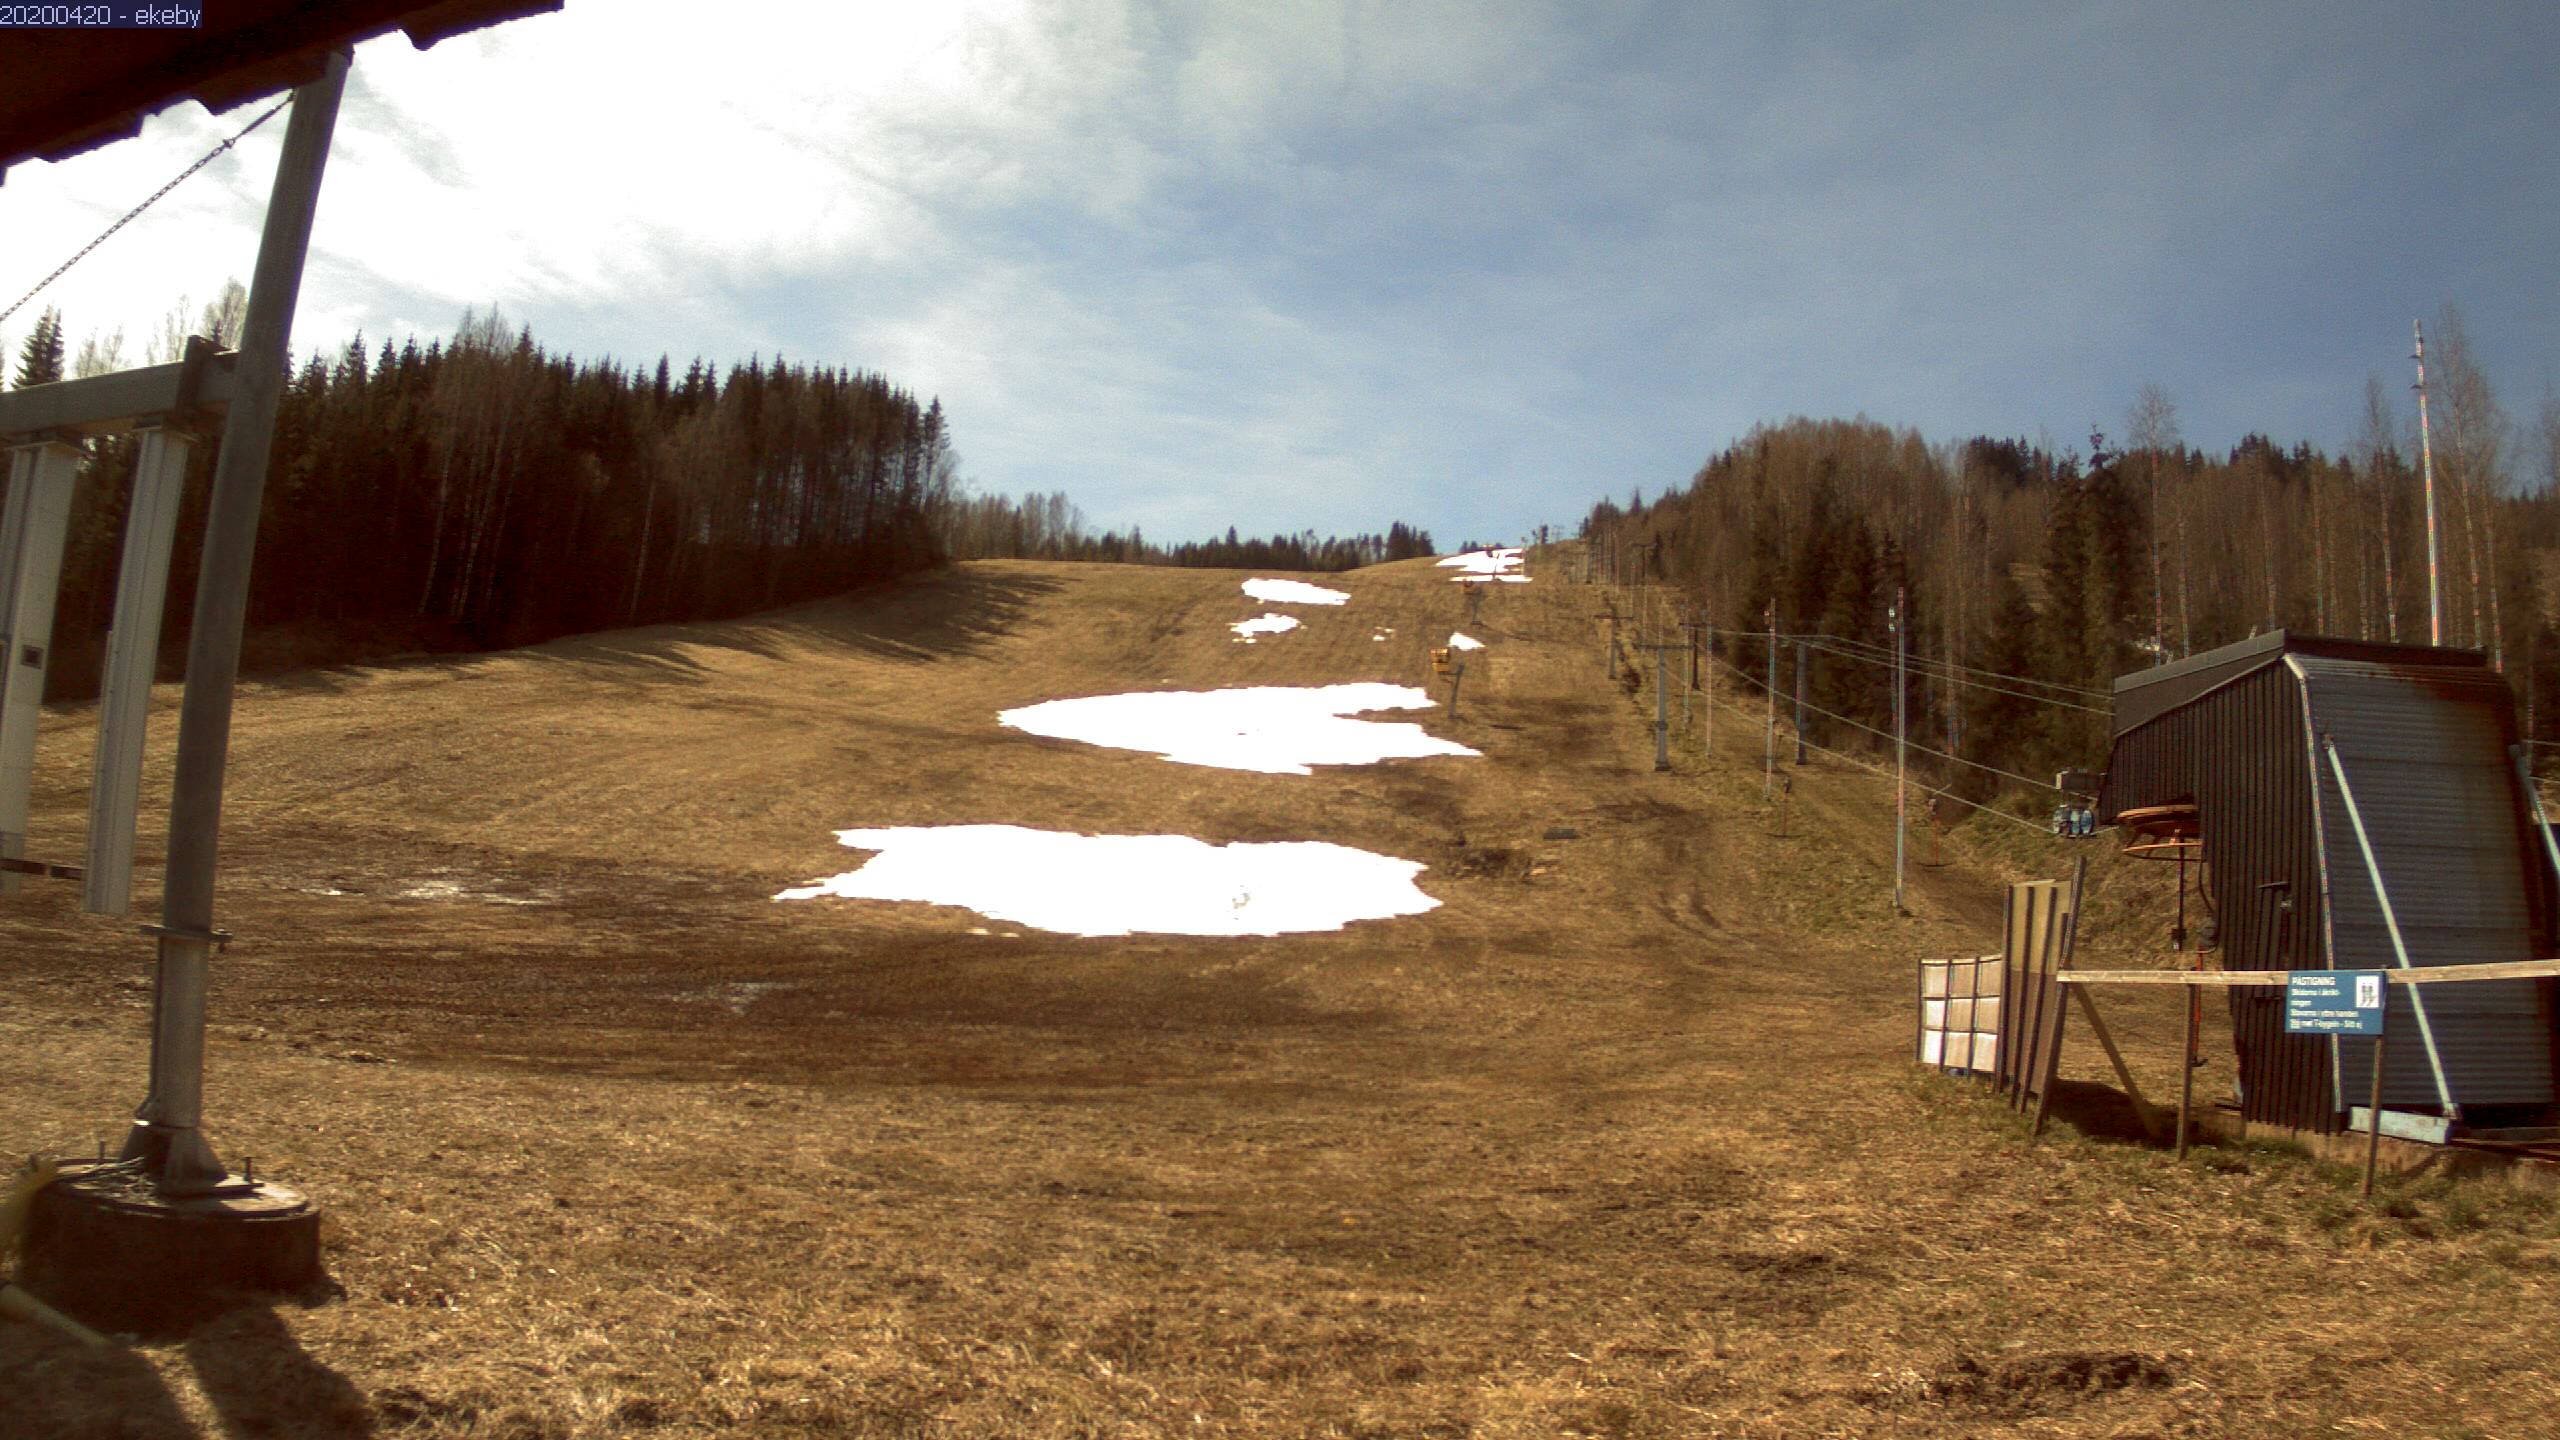 Webcam de la Estación de Esquí de Ski Sunne